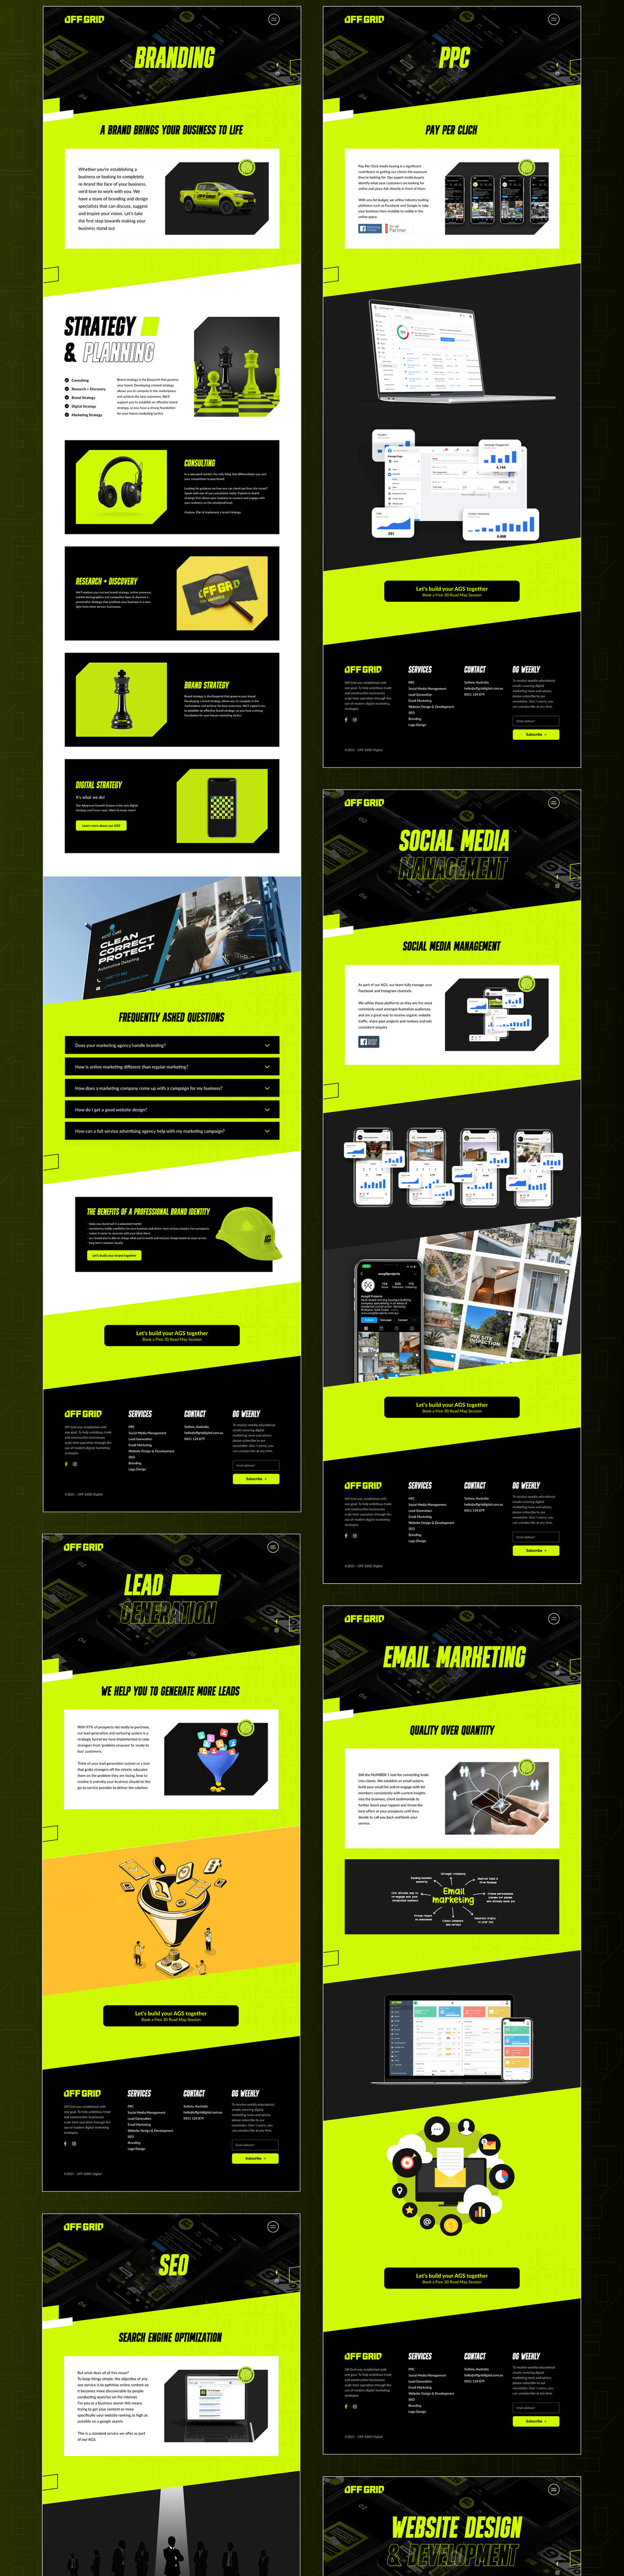 app design application design Figma Interface ui design uiux Webdesign Website Design